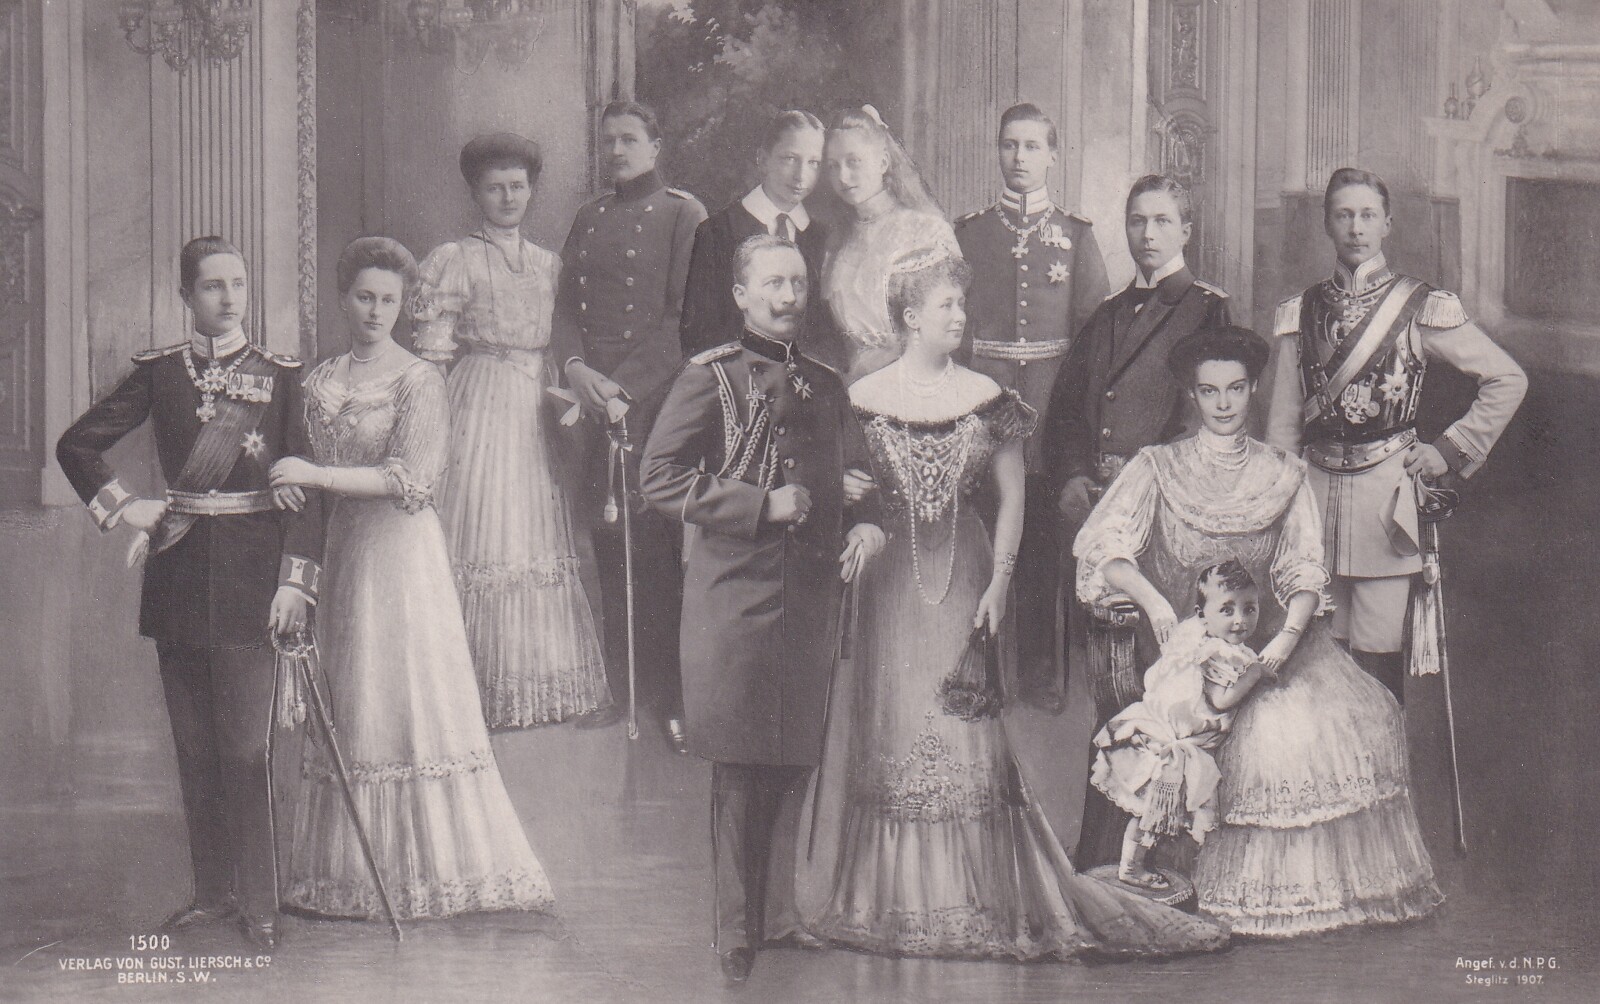 Bildpostkarte mit Fotomontage der deutschen Kaiserfamilie, 1907 (Schloß Wernigerode GmbH RR-F)